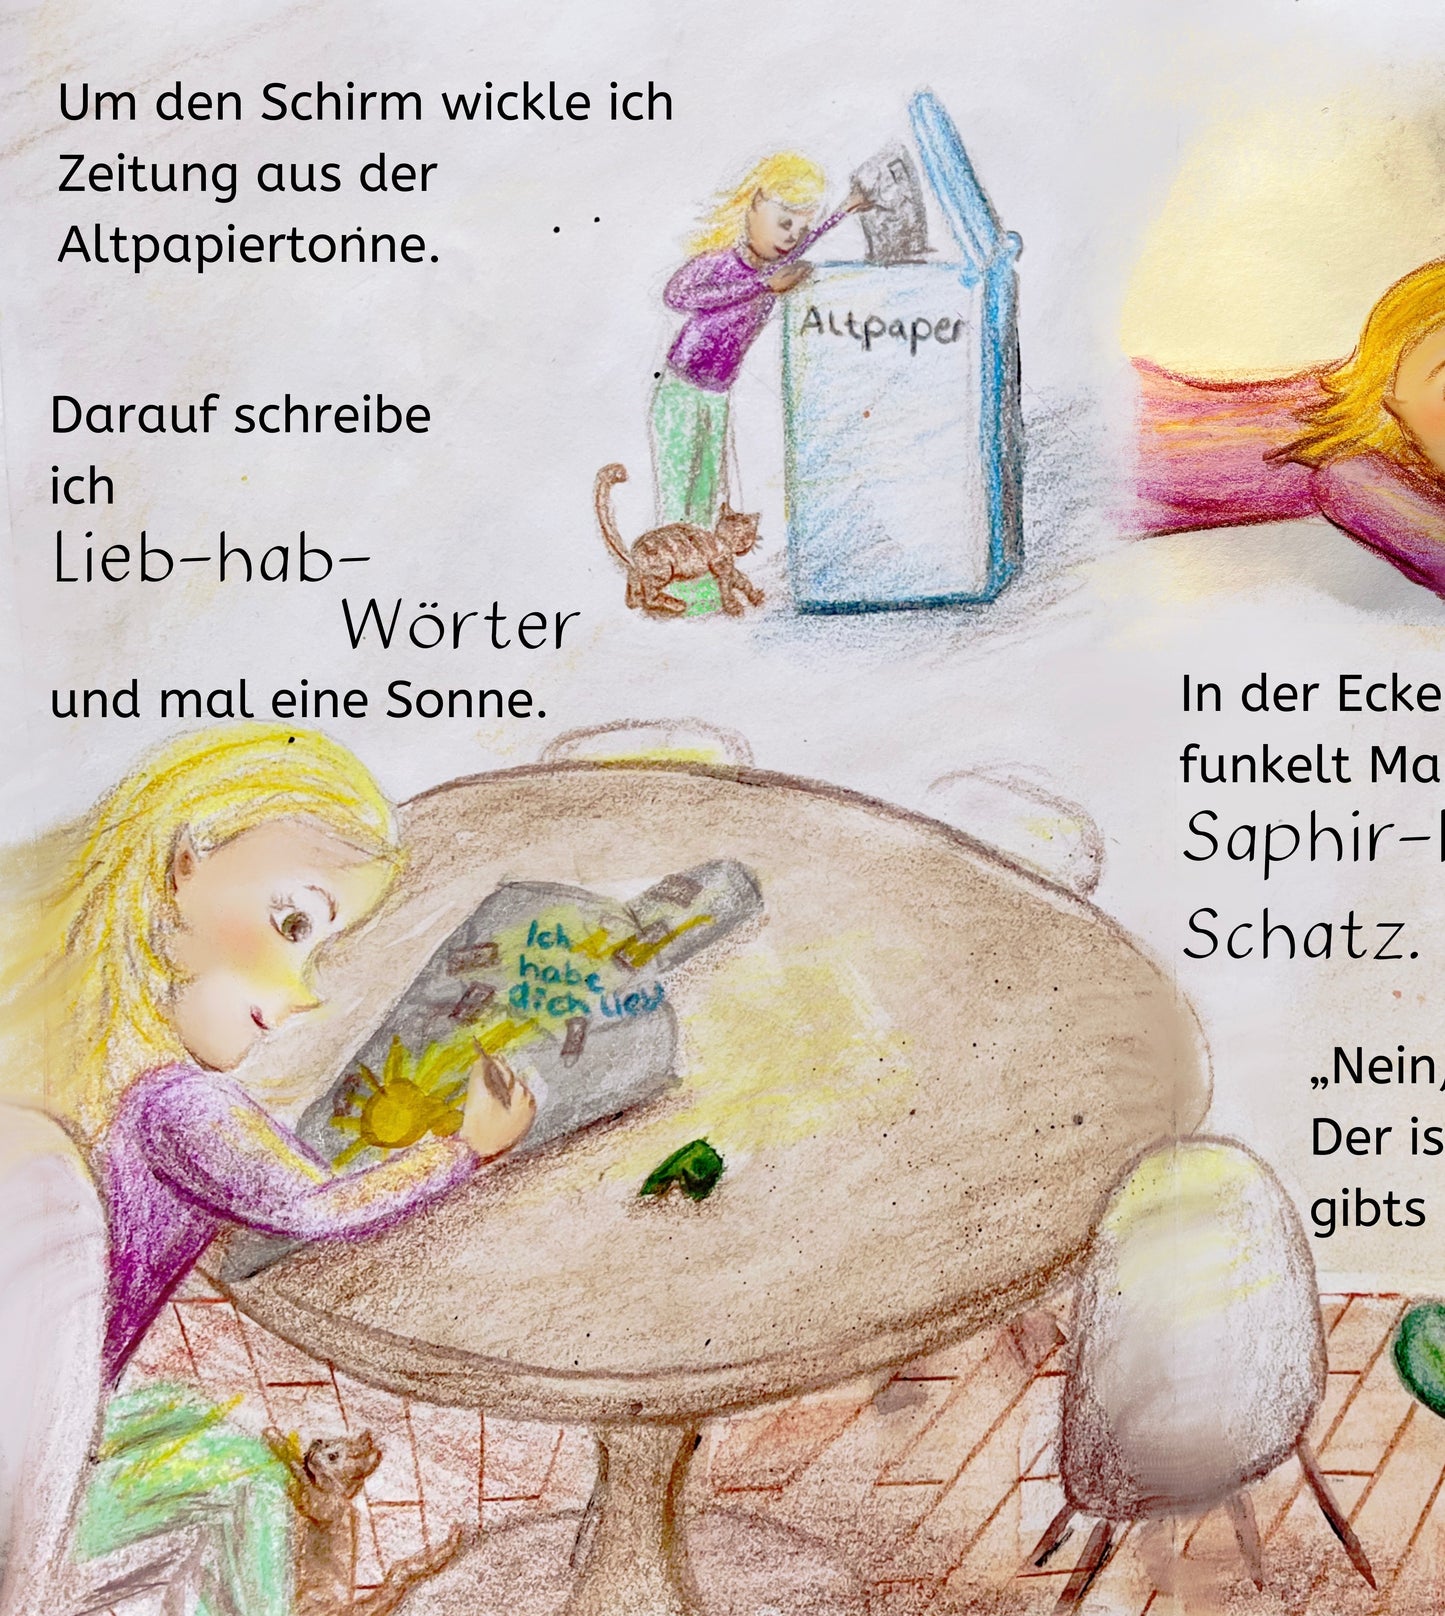 Kinderbuch „Weil DU mein wertvollstes Geschenk bist“ - Softcover Taschenbuch DIN A5